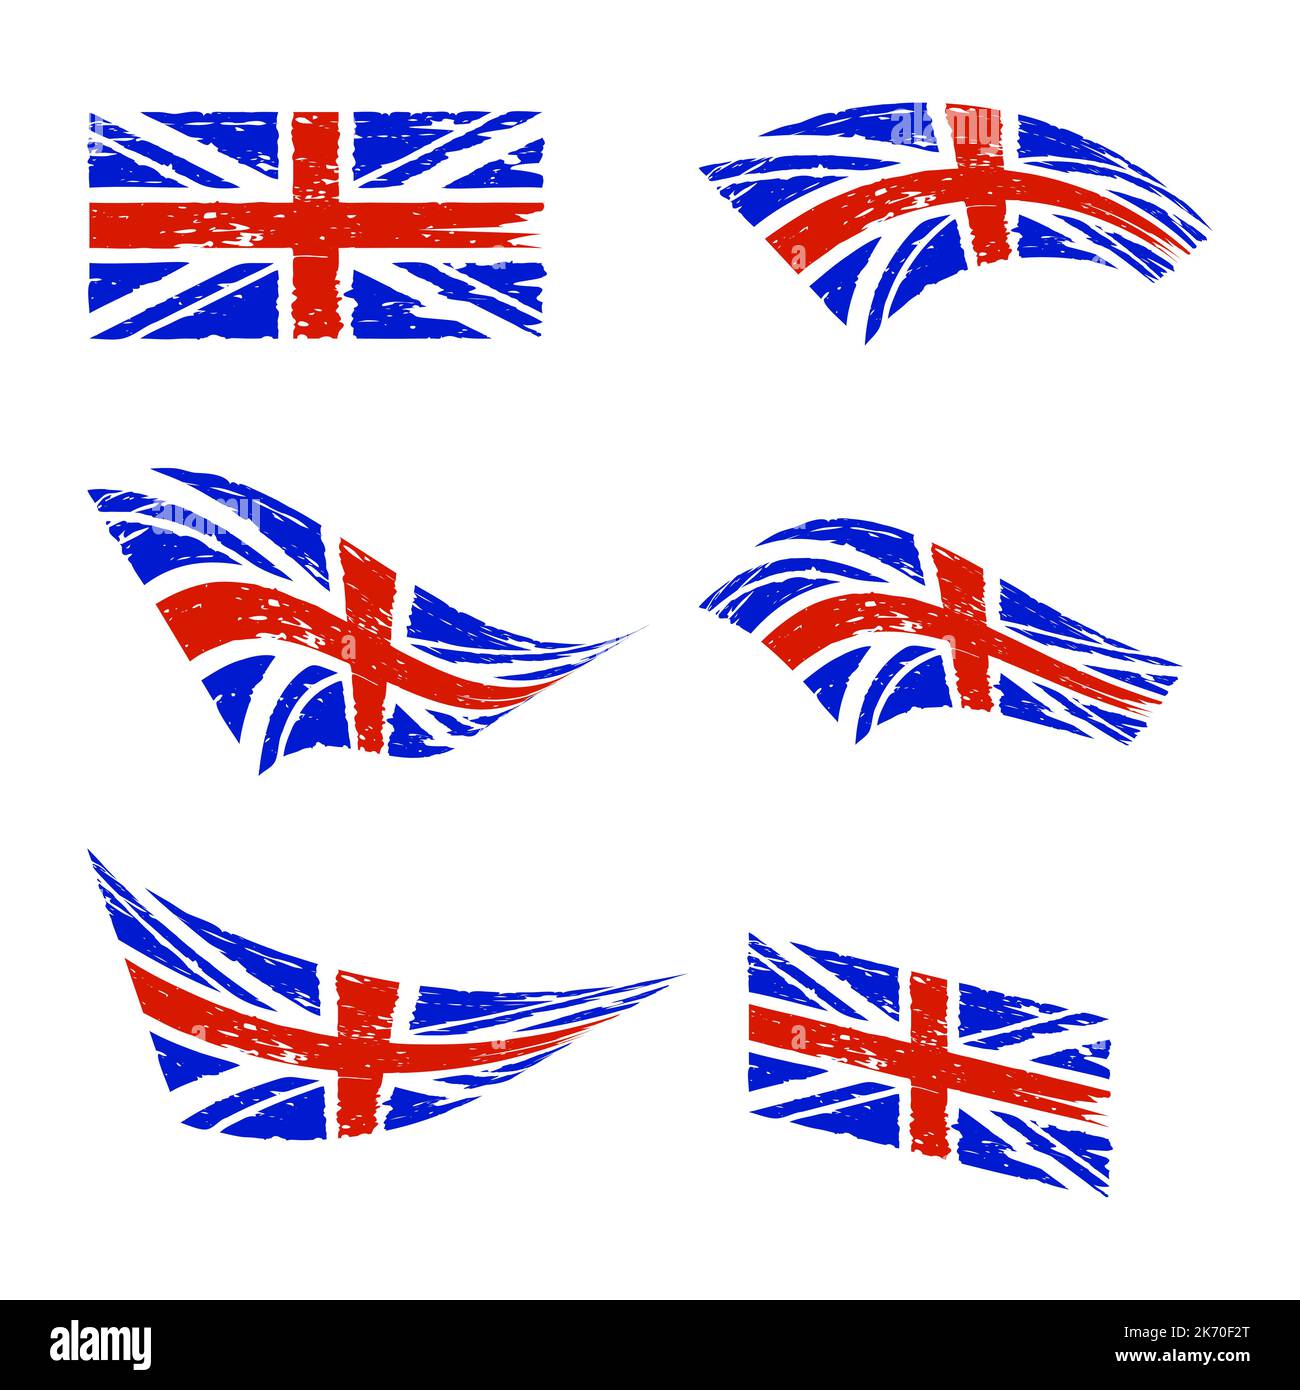 Bandiera del Regno Unito ondulata impostata. Rosso e blu storto bandiera inglese grunge. Isolato su sfondo bianco. Illustrazione vettoriale. Illustrazione Vettoriale